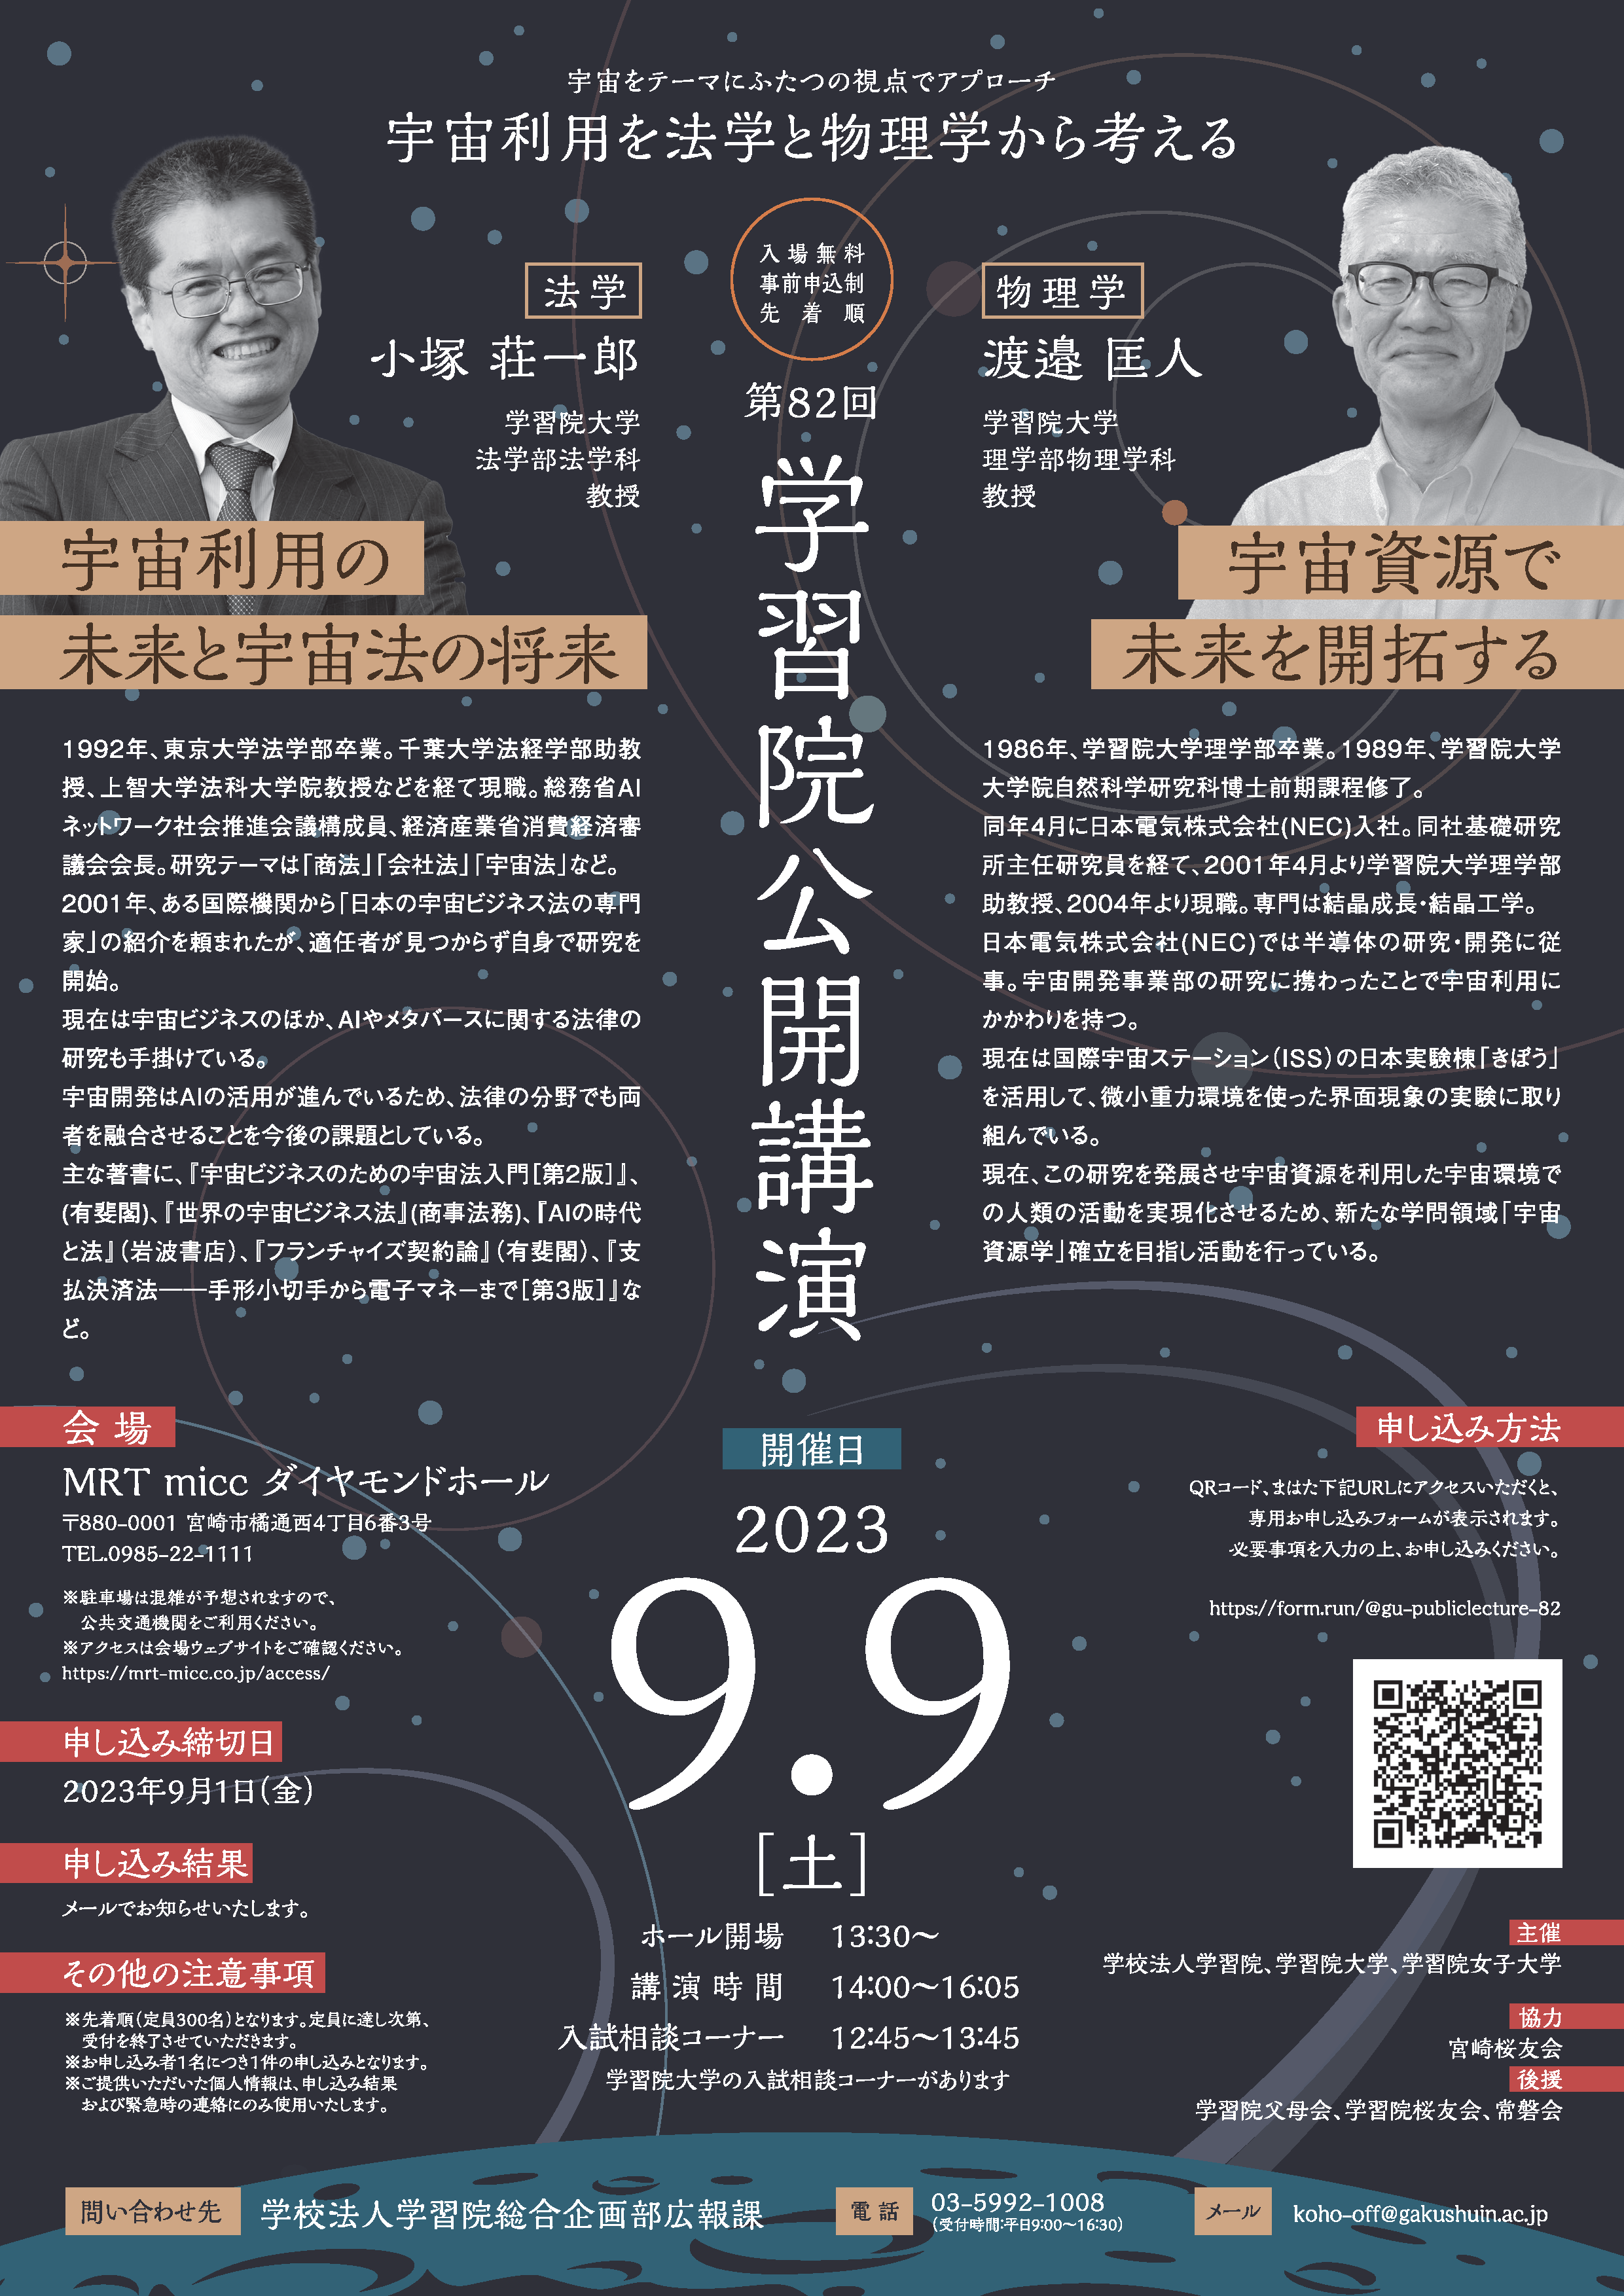 学校法人学習院が9月9日(土)に宮崎市で公開講演を開催　宇宙をテーマにふたつの視点でアプローチ　宇宙利用を法学と物理学から考える